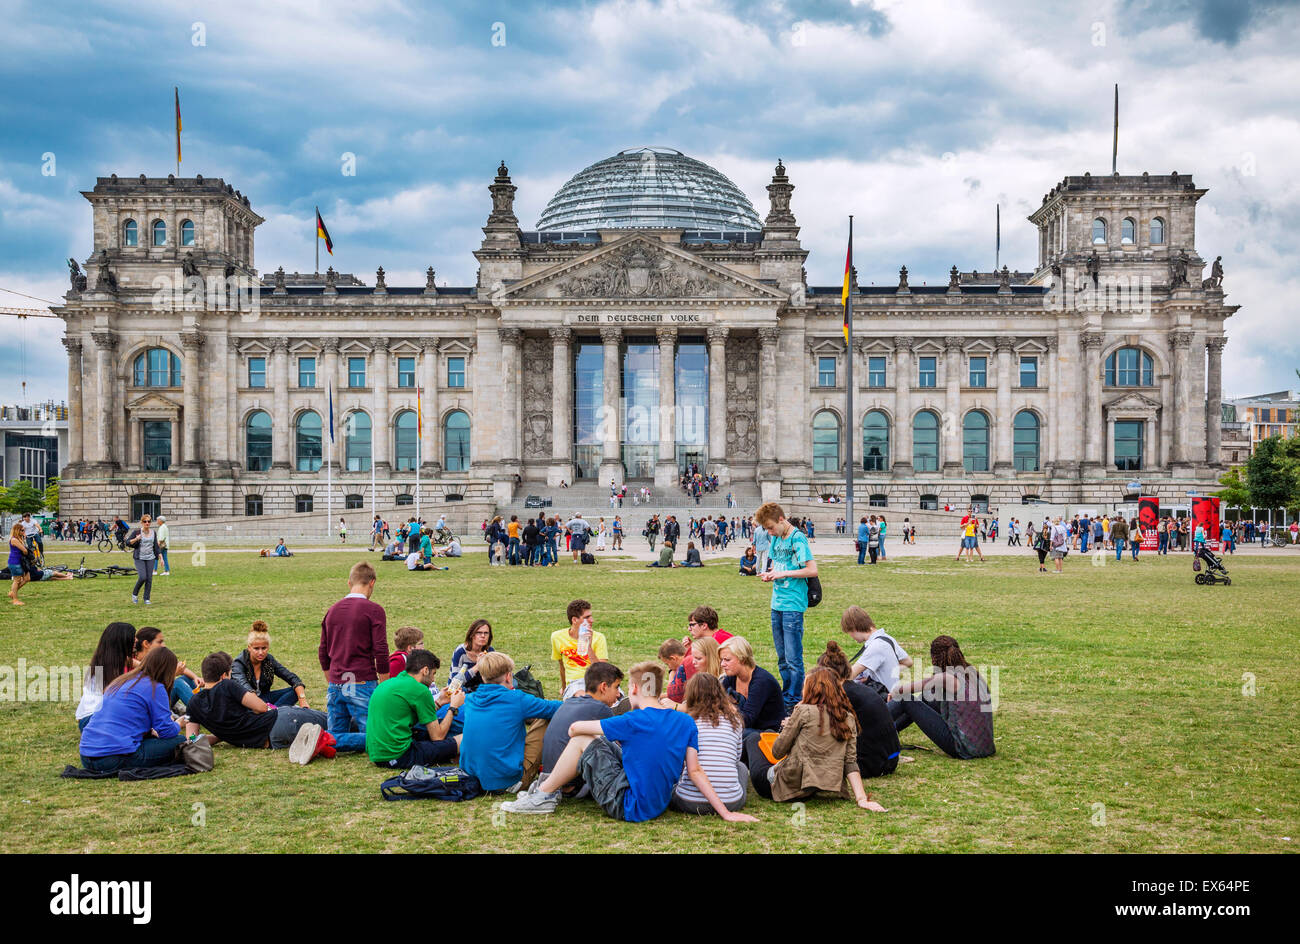 Germania, Berlino, cielo nuvoloso sopra l'Edificio del Reichstag Foto Stock